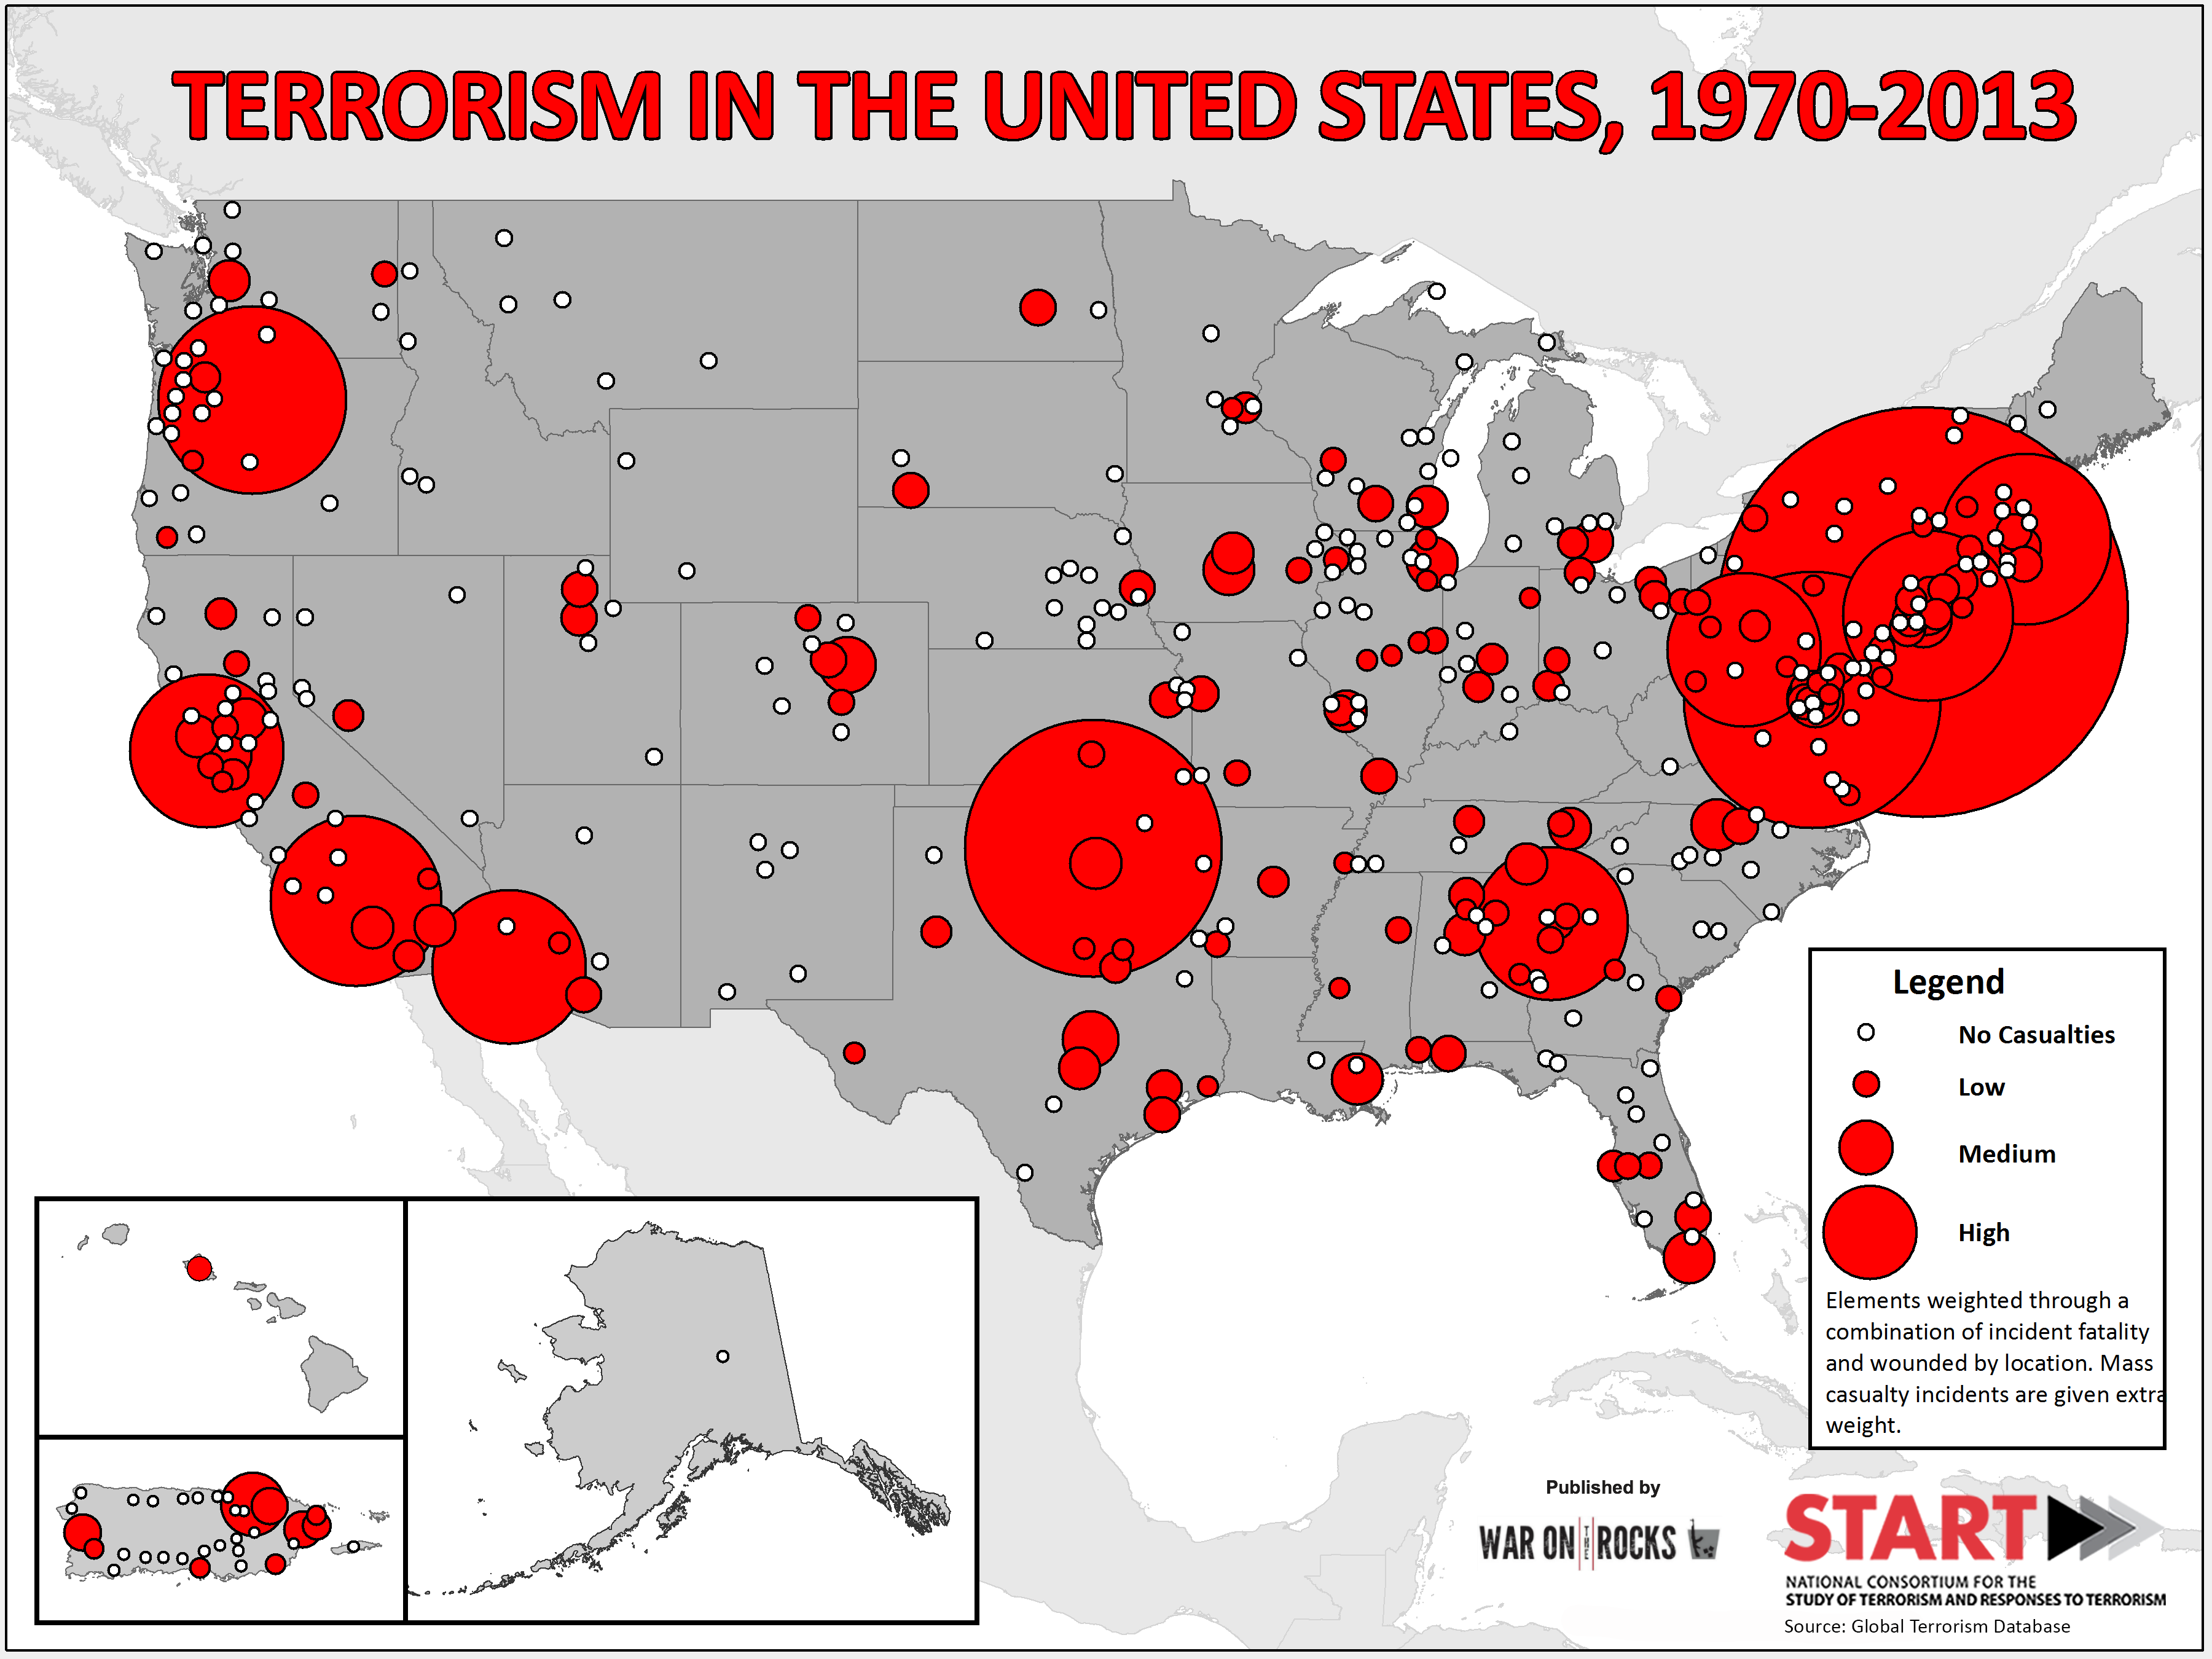 Americas Part in Terrorism